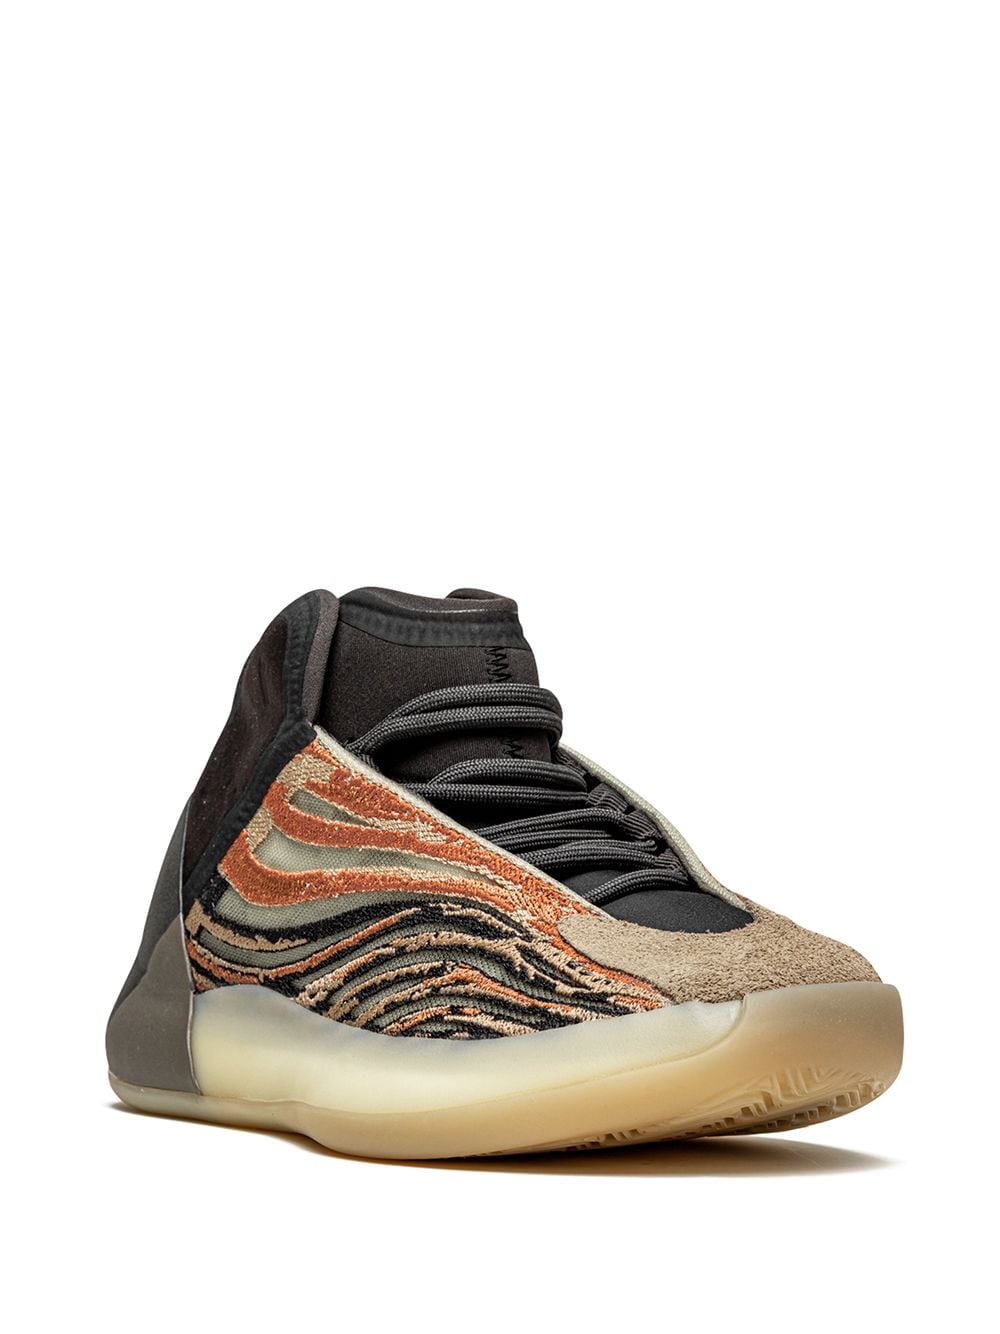 Adidas Yeezy YEEZY QNTM Flash Orange Sneakers - Farfetch